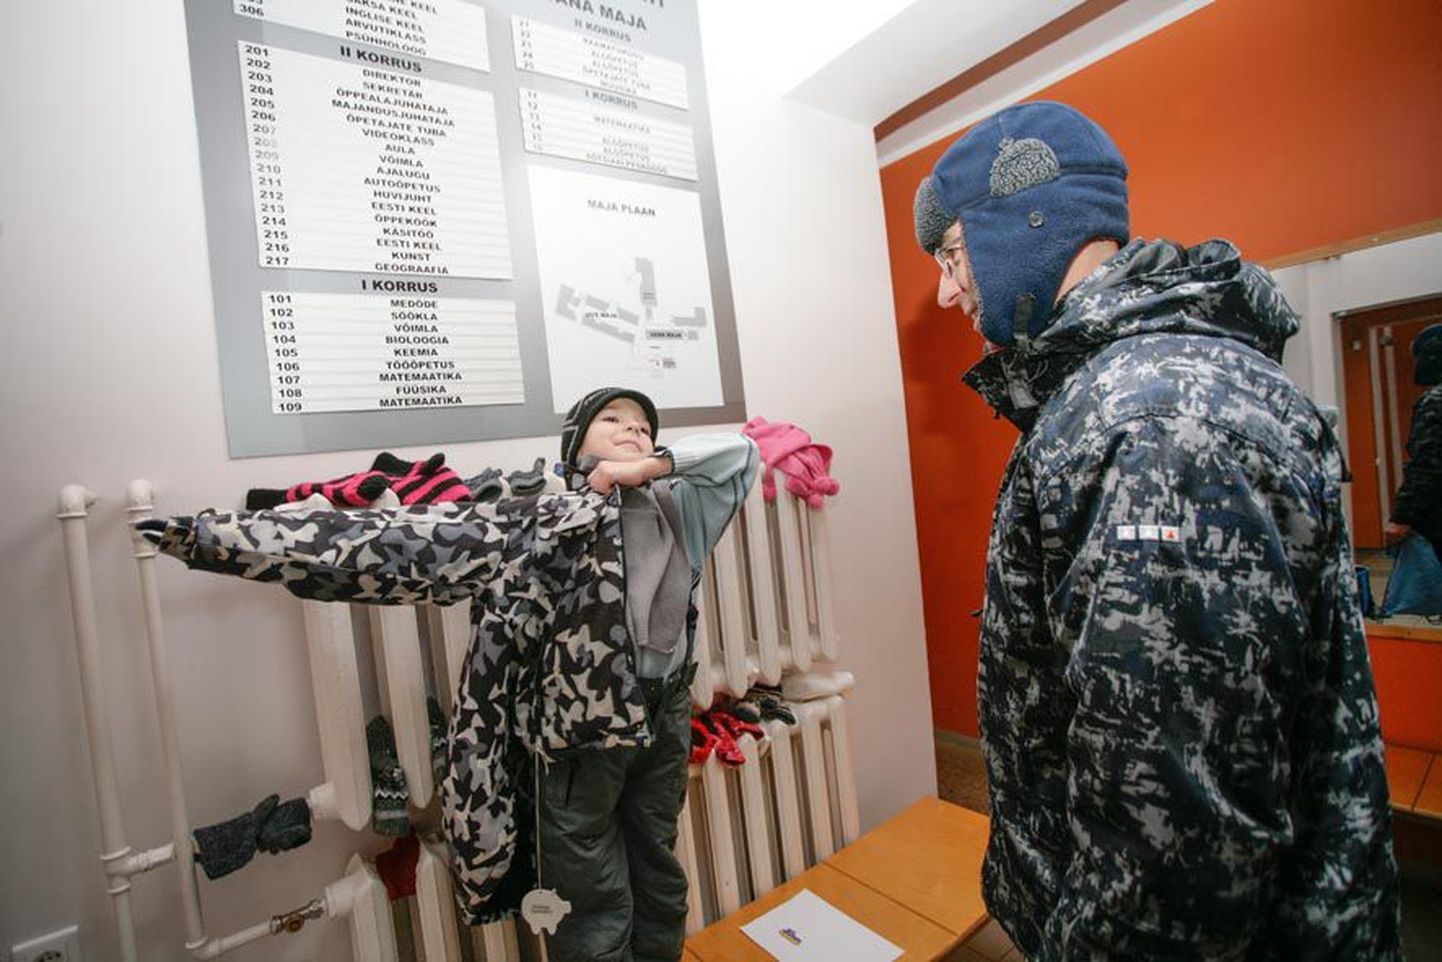 Aravete keskkooli lapsed kuivatavad oma rõivaid radiaatoril, mille on soojaks kütnud viis protsenti odavam roheline energia. Pildil Indrek Tokaruk koos isa Igoriga.